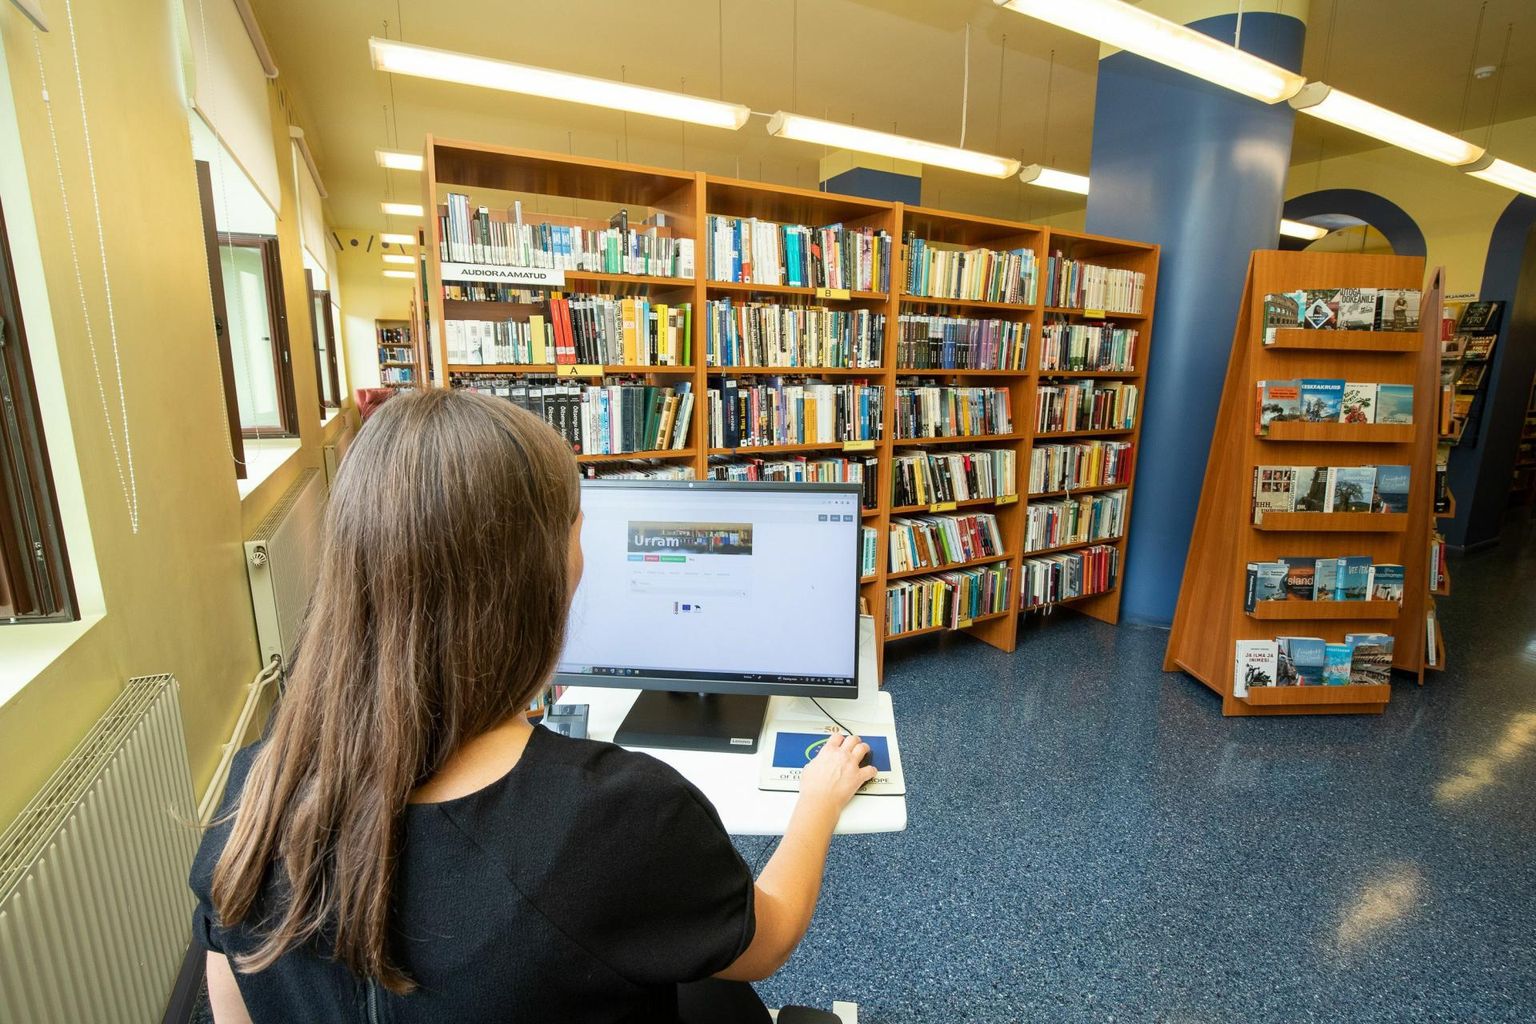 Lääne-Virumaa keskraamatukogu ja maakonna kõik teised rahvaraamatukogud soovivad teada, millega on lugejad rahul ja mida sooviksid veel raamatukogus teha või näha.